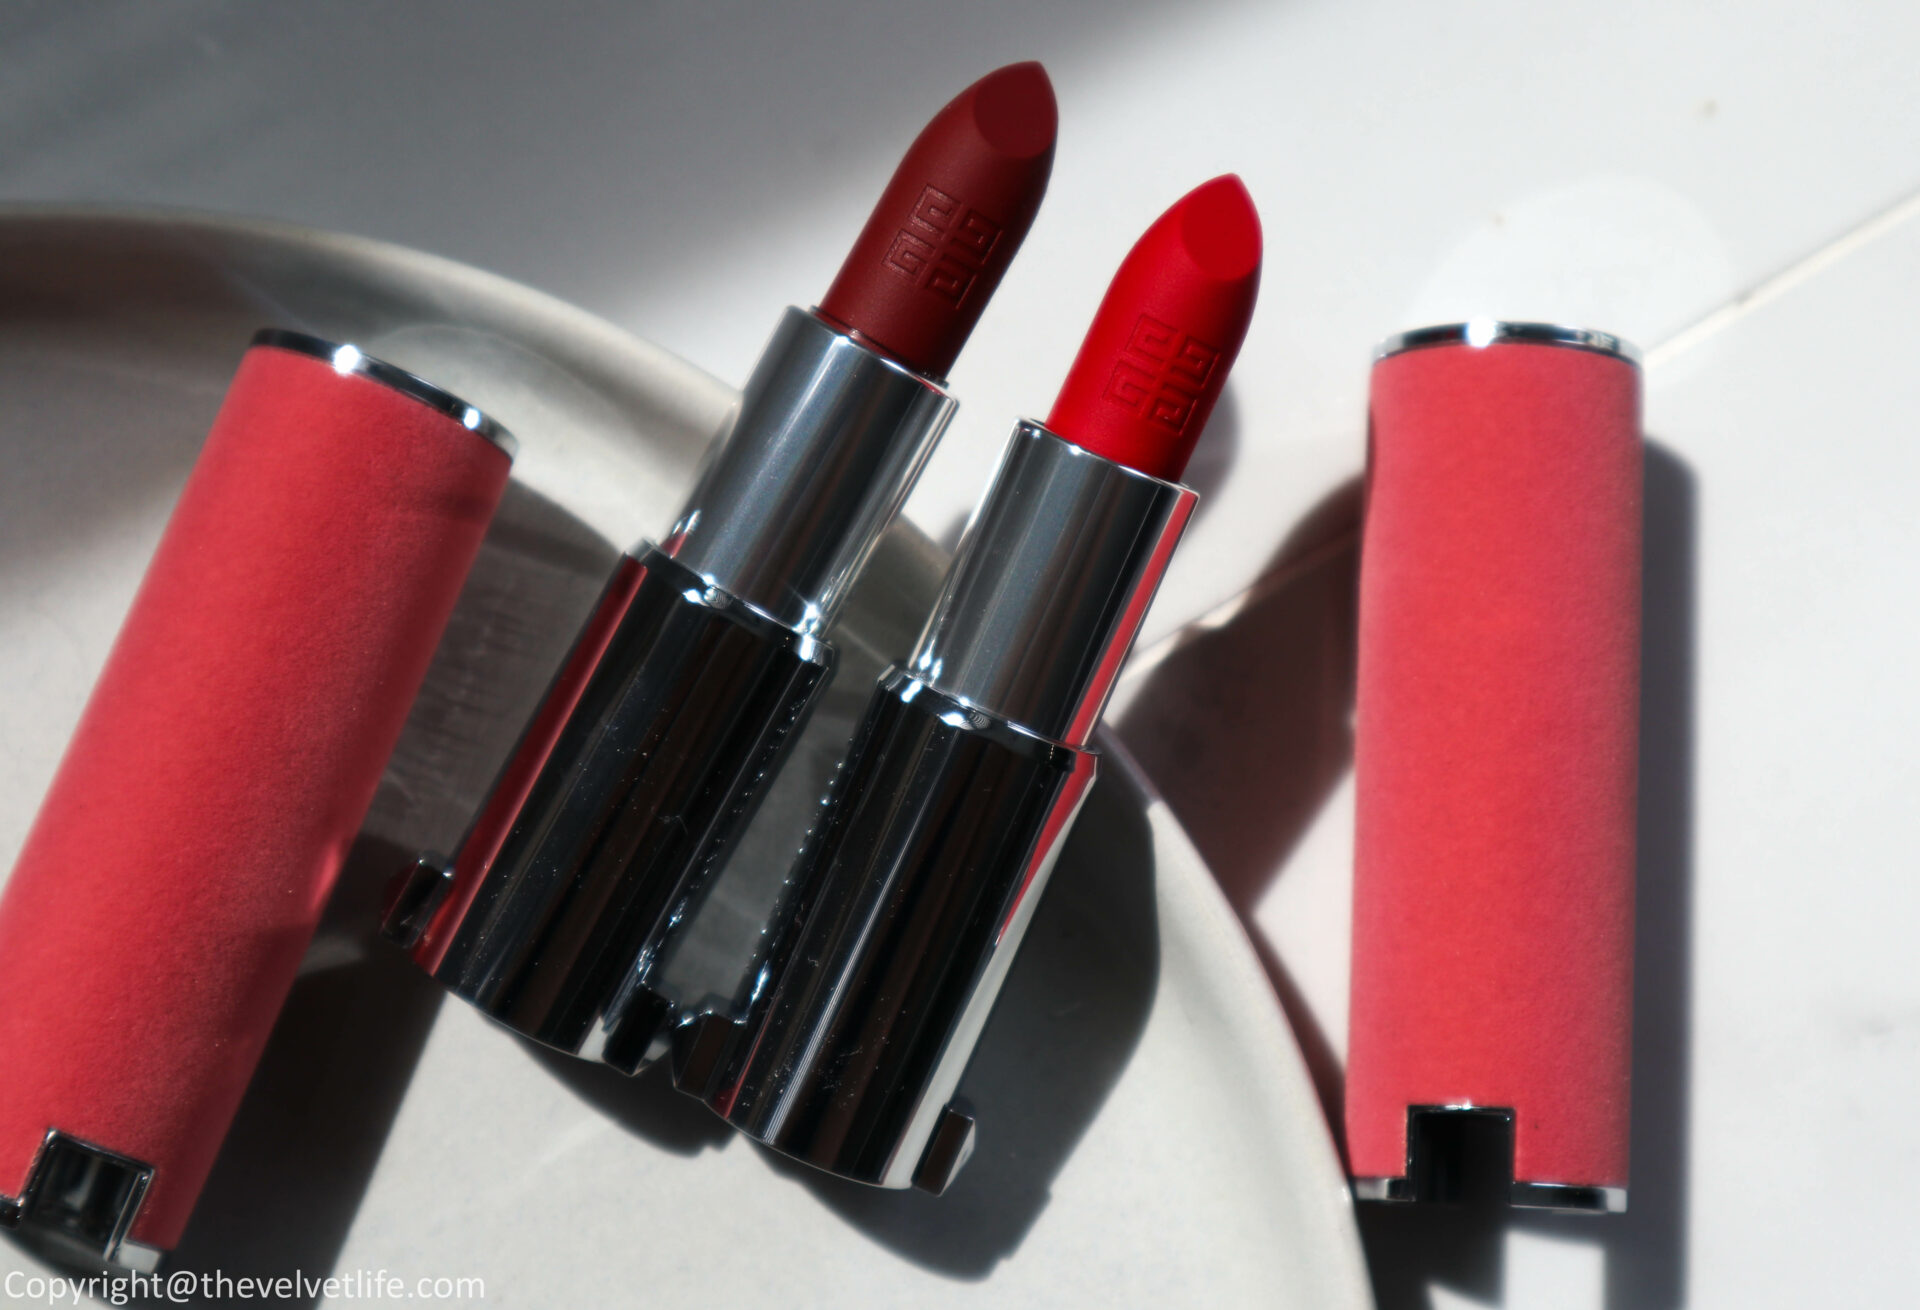 Le Rouge Sheer Velvet Matte Lipstick - Lipstick